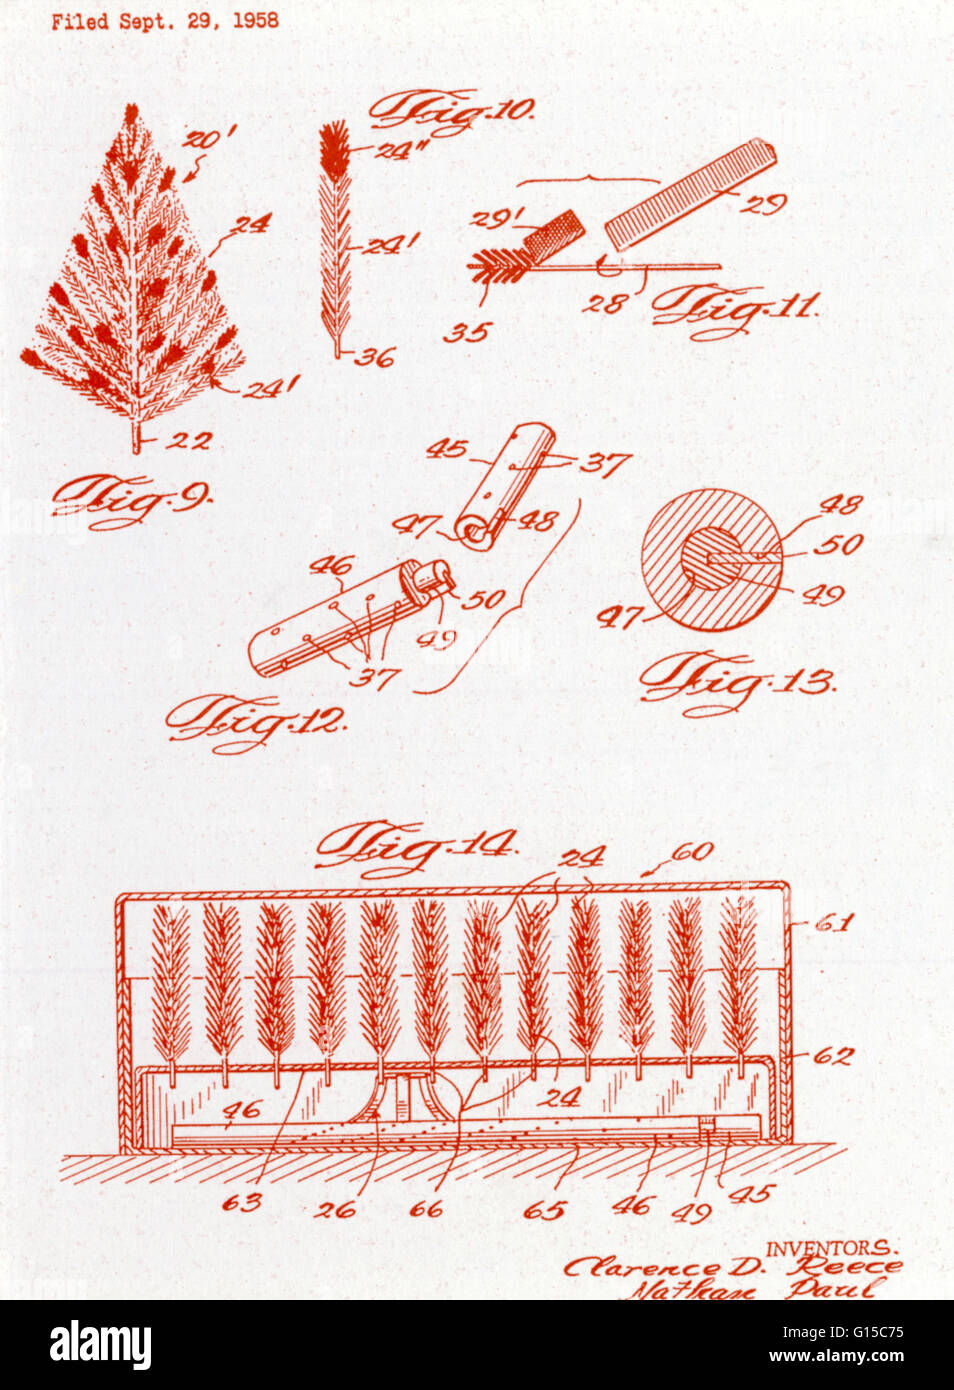 Schematische Darstellung einer Aluminium-Weihnachtsbaum für ein US-Patent eingereicht. Datei am 29. September 1958 Erfinder Clarence D. Reece und Nathan Paul. Stockfoto